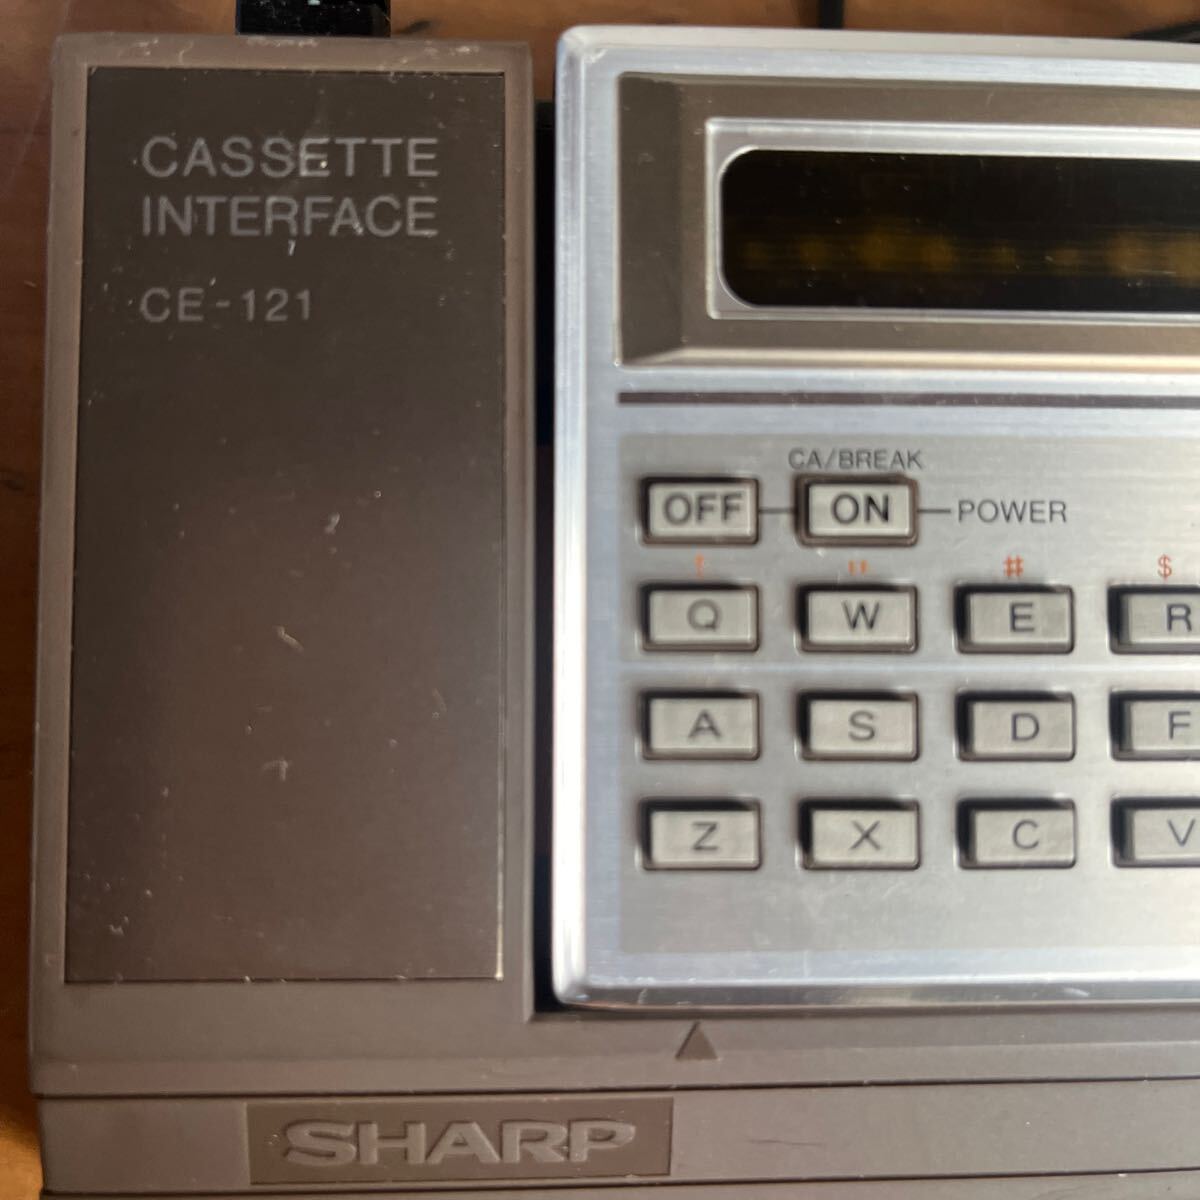 SHARP ポケットコンピュータ PC-1210 /カセットインターフェース CE-121 の画像2